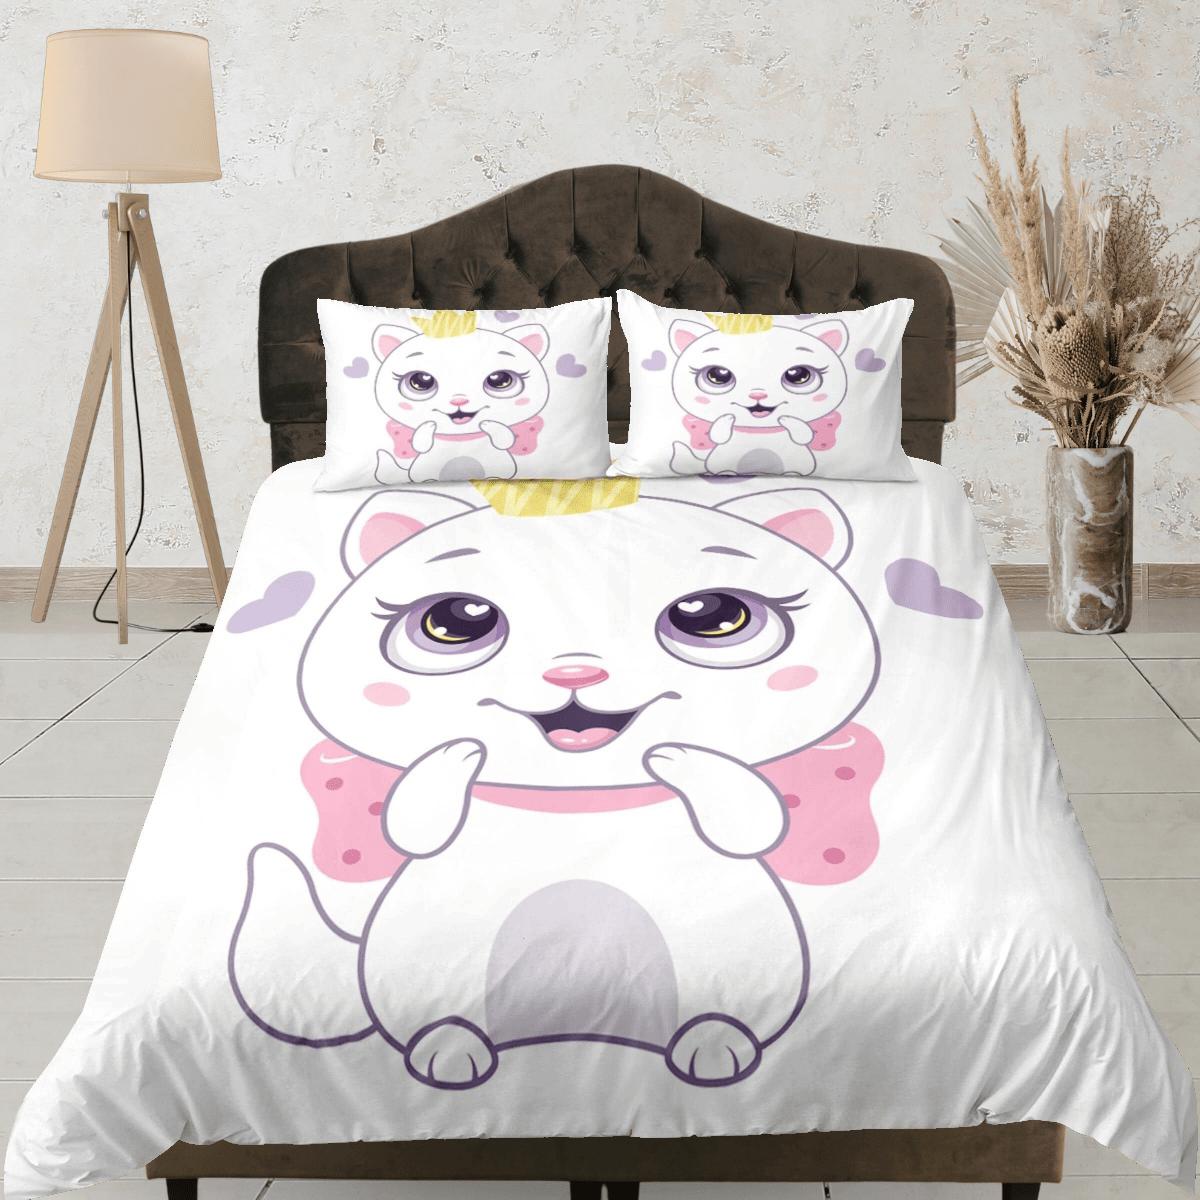 daintyduvet Cute white cat bedding, girl toddler bedding, kids duvet cover set, gift for cat lovers, baby bedding, baby shower gift